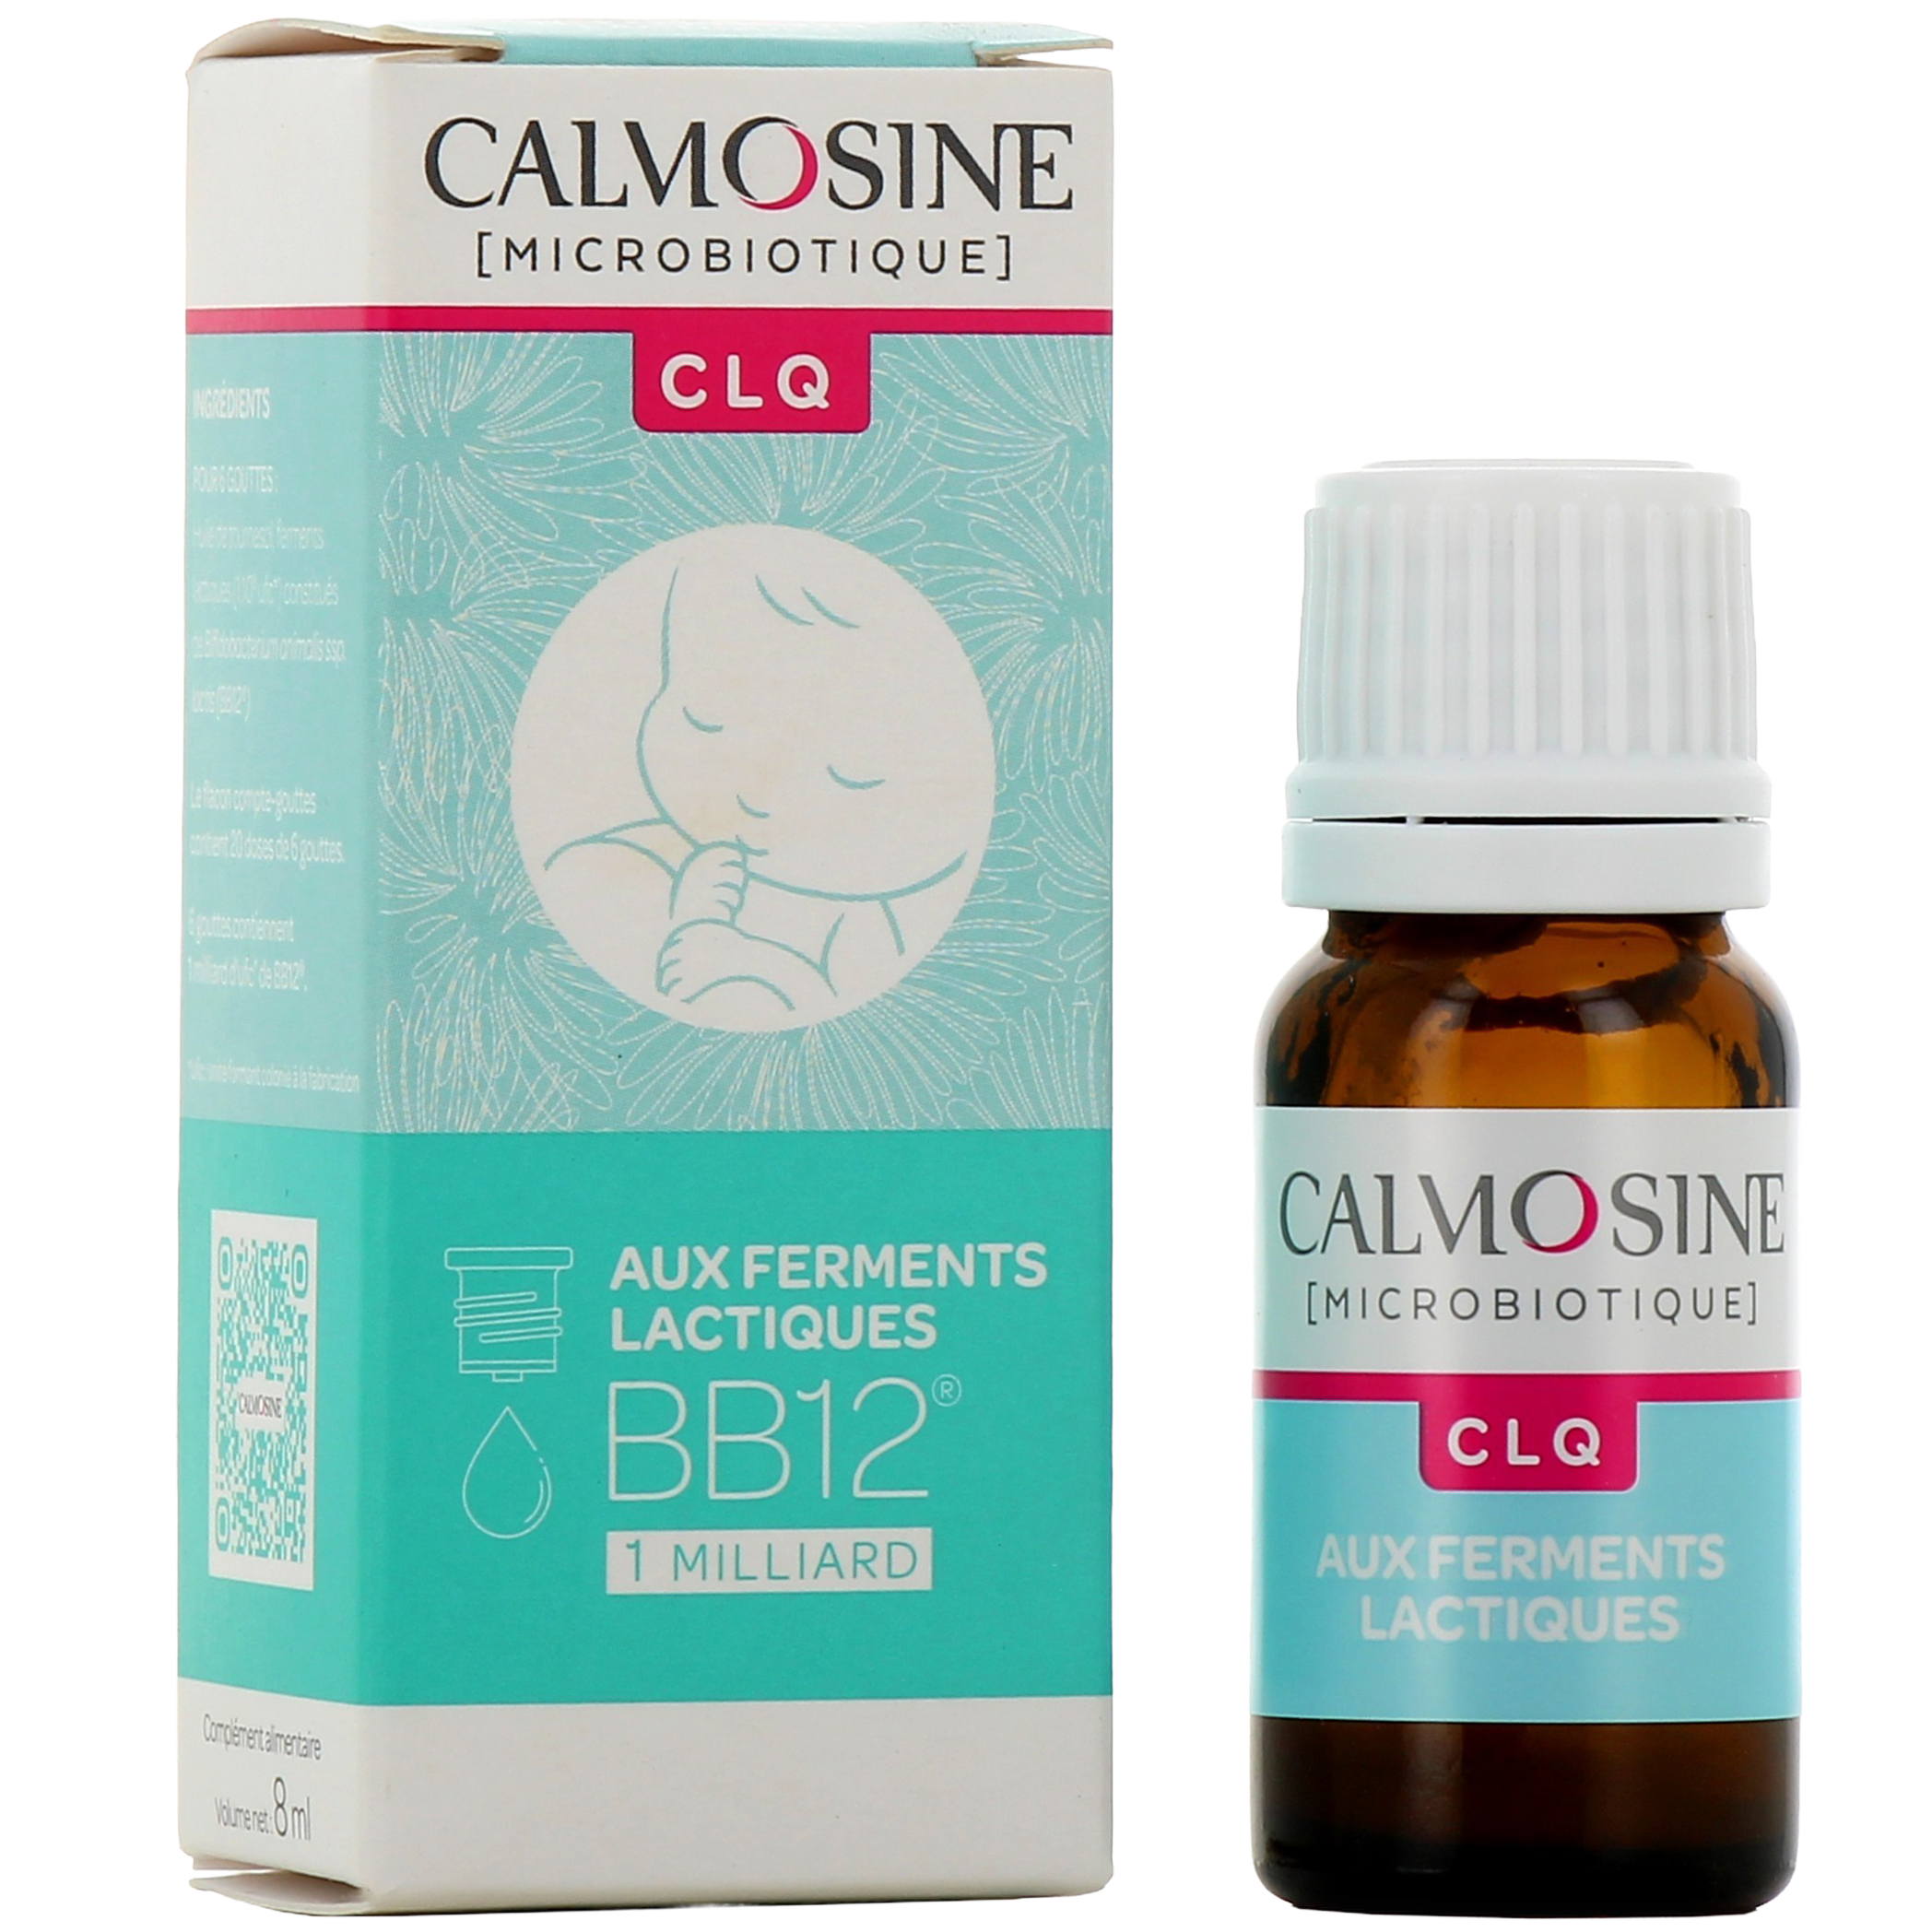 Calmosine Microbiotique CLQ 8ml